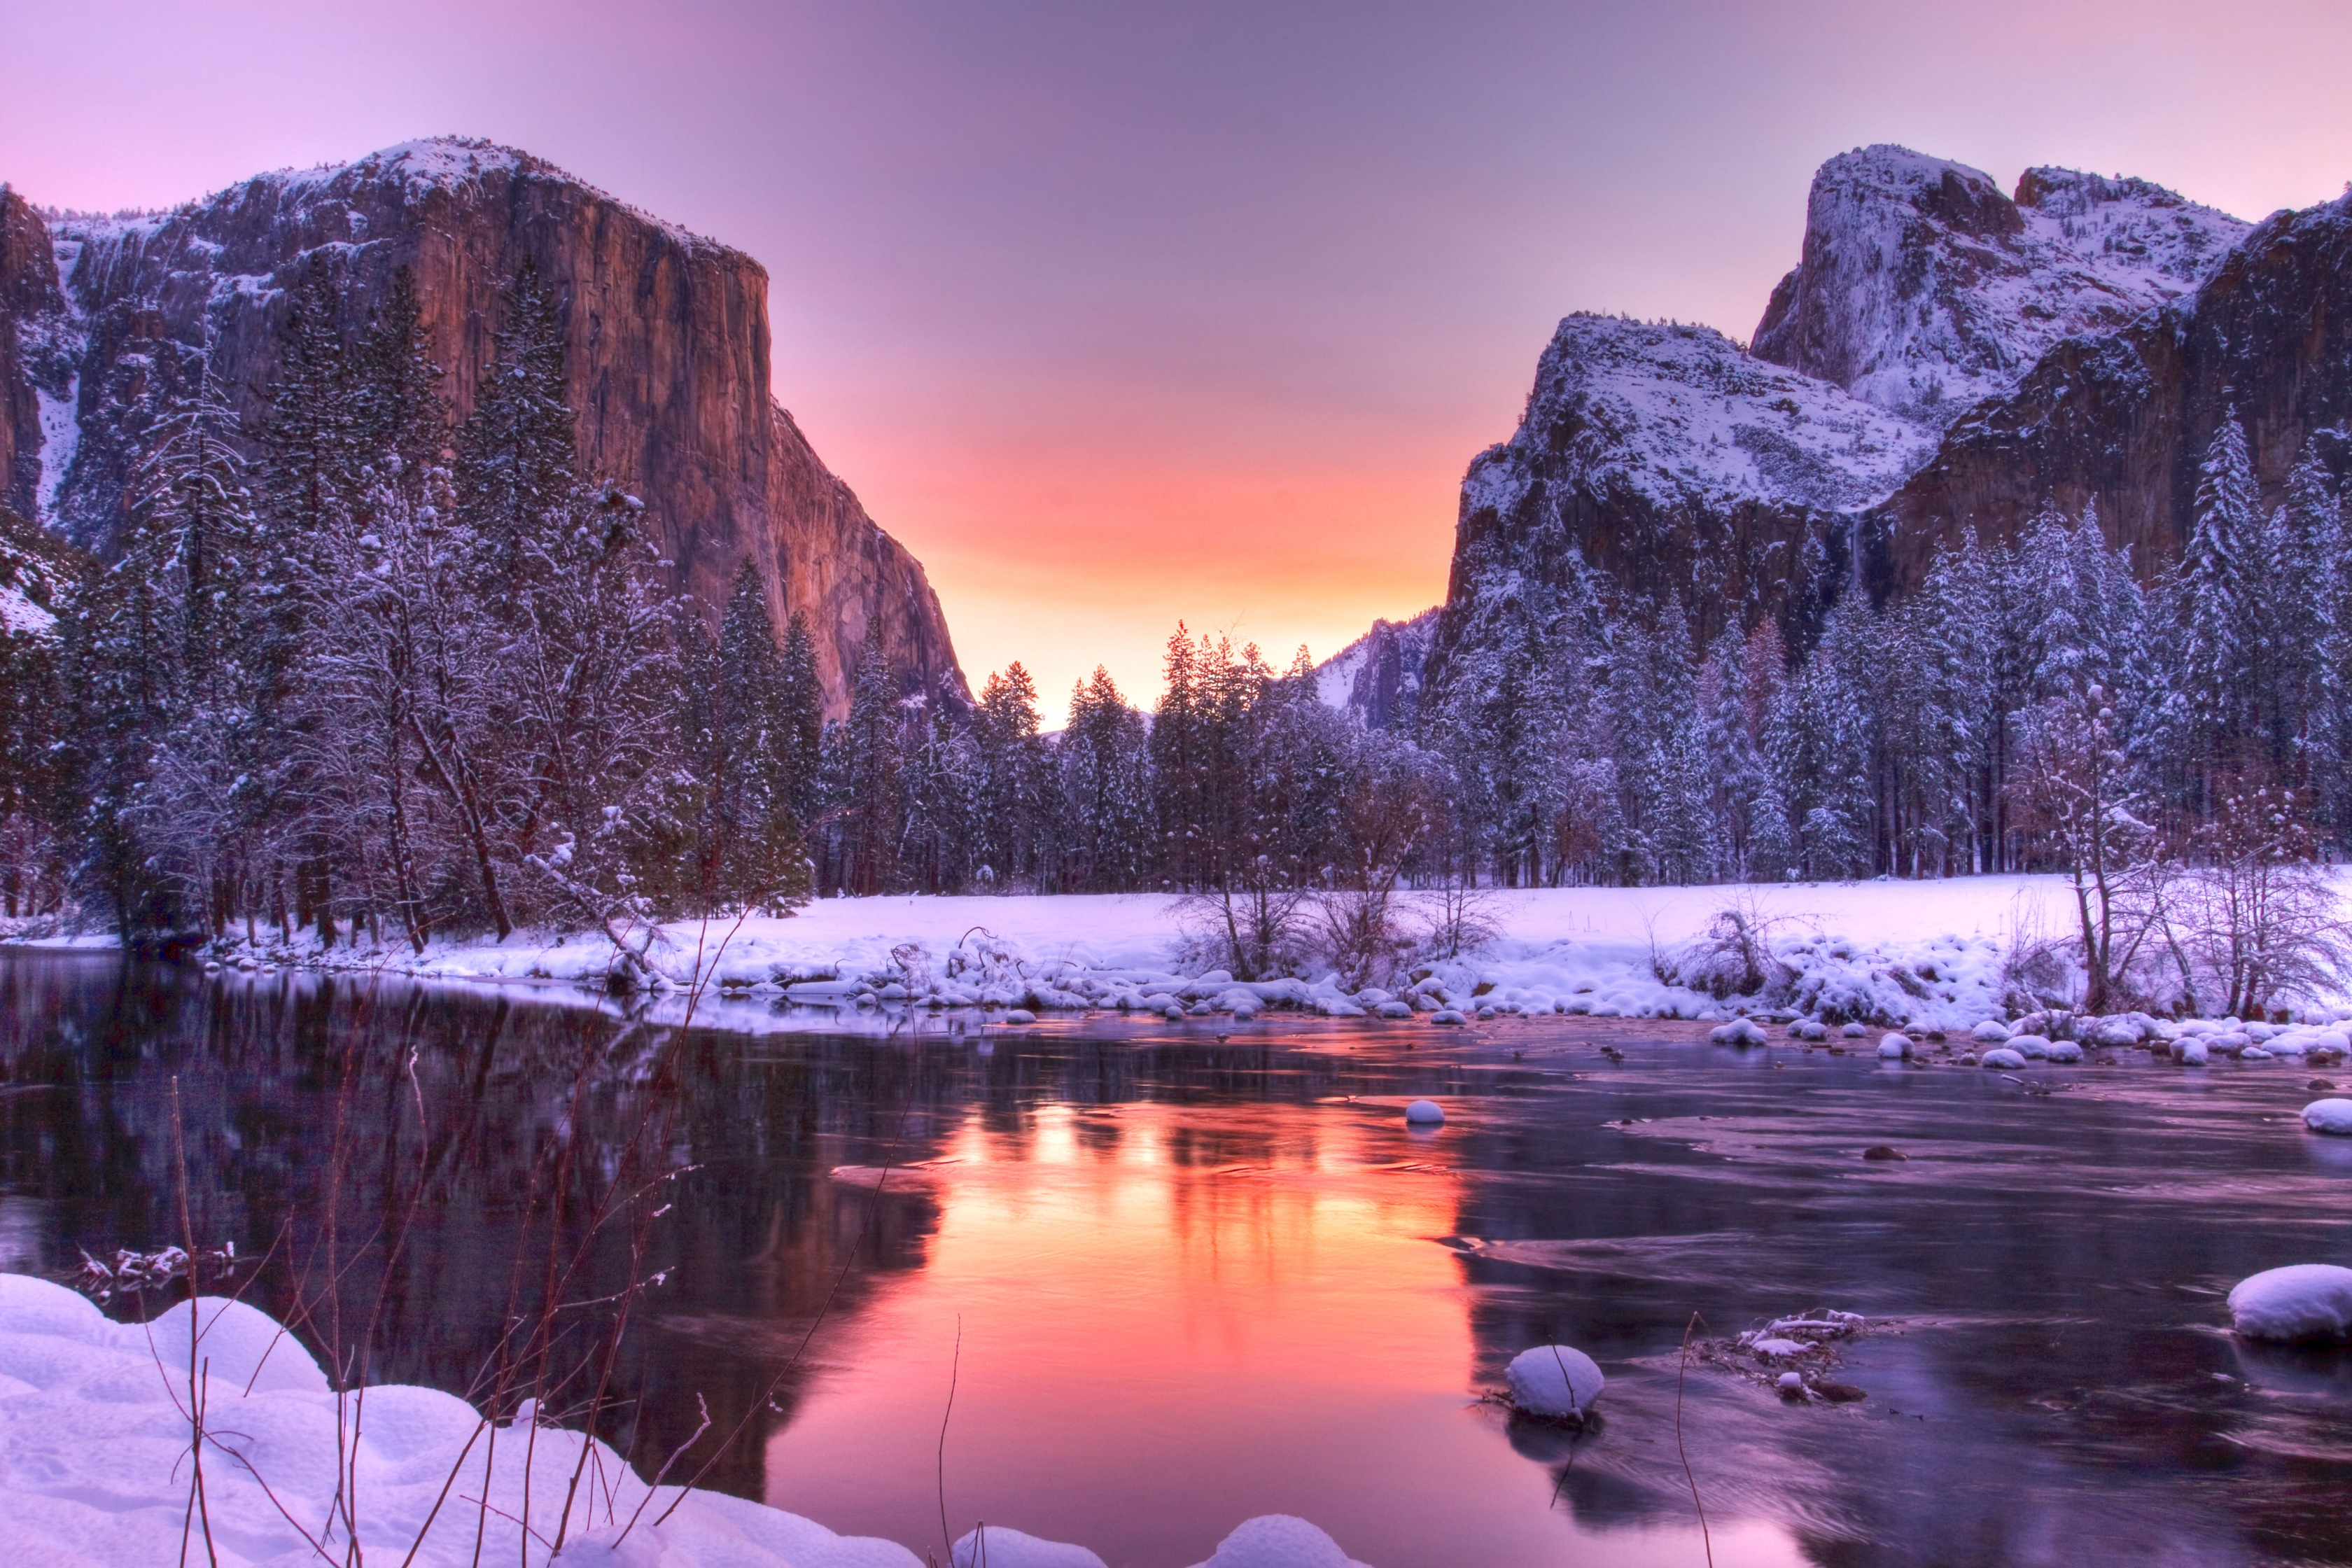 Winter comes at Yosemite National Park.